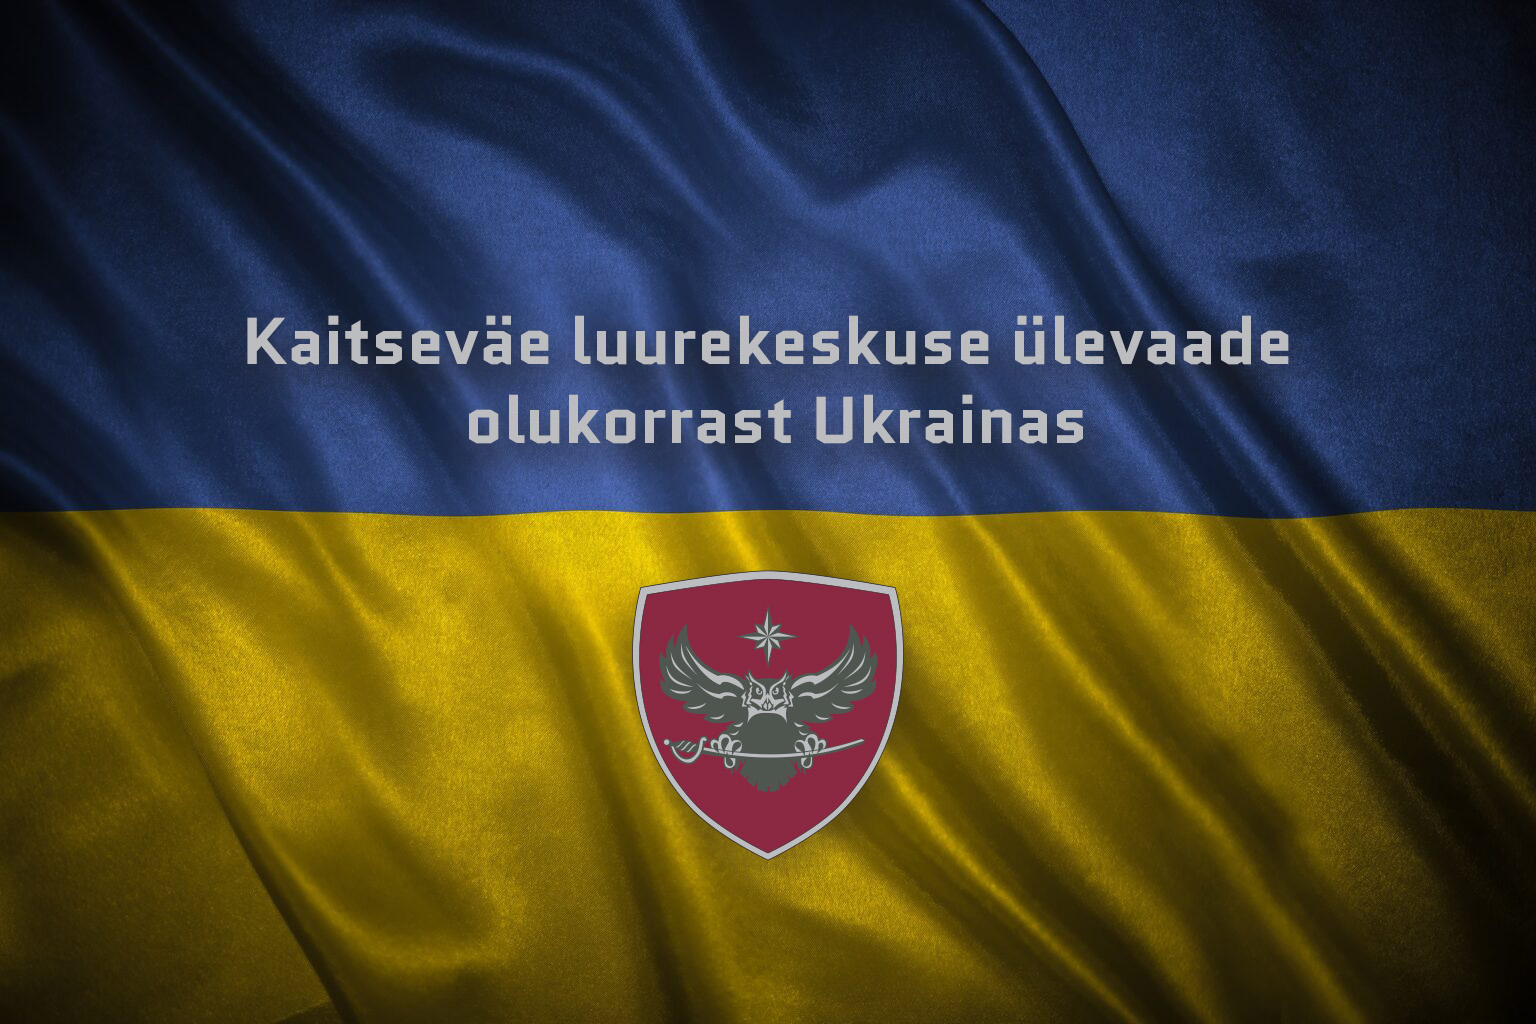 https://mil.ee/uudised/kaitsevae-luurekeskuse-ulevaade-olukorrast-ukrainas-167 Ülevaade sõjategevusest Ukraina rindel peamiste suundade kaupa perioodil 12.–19.0